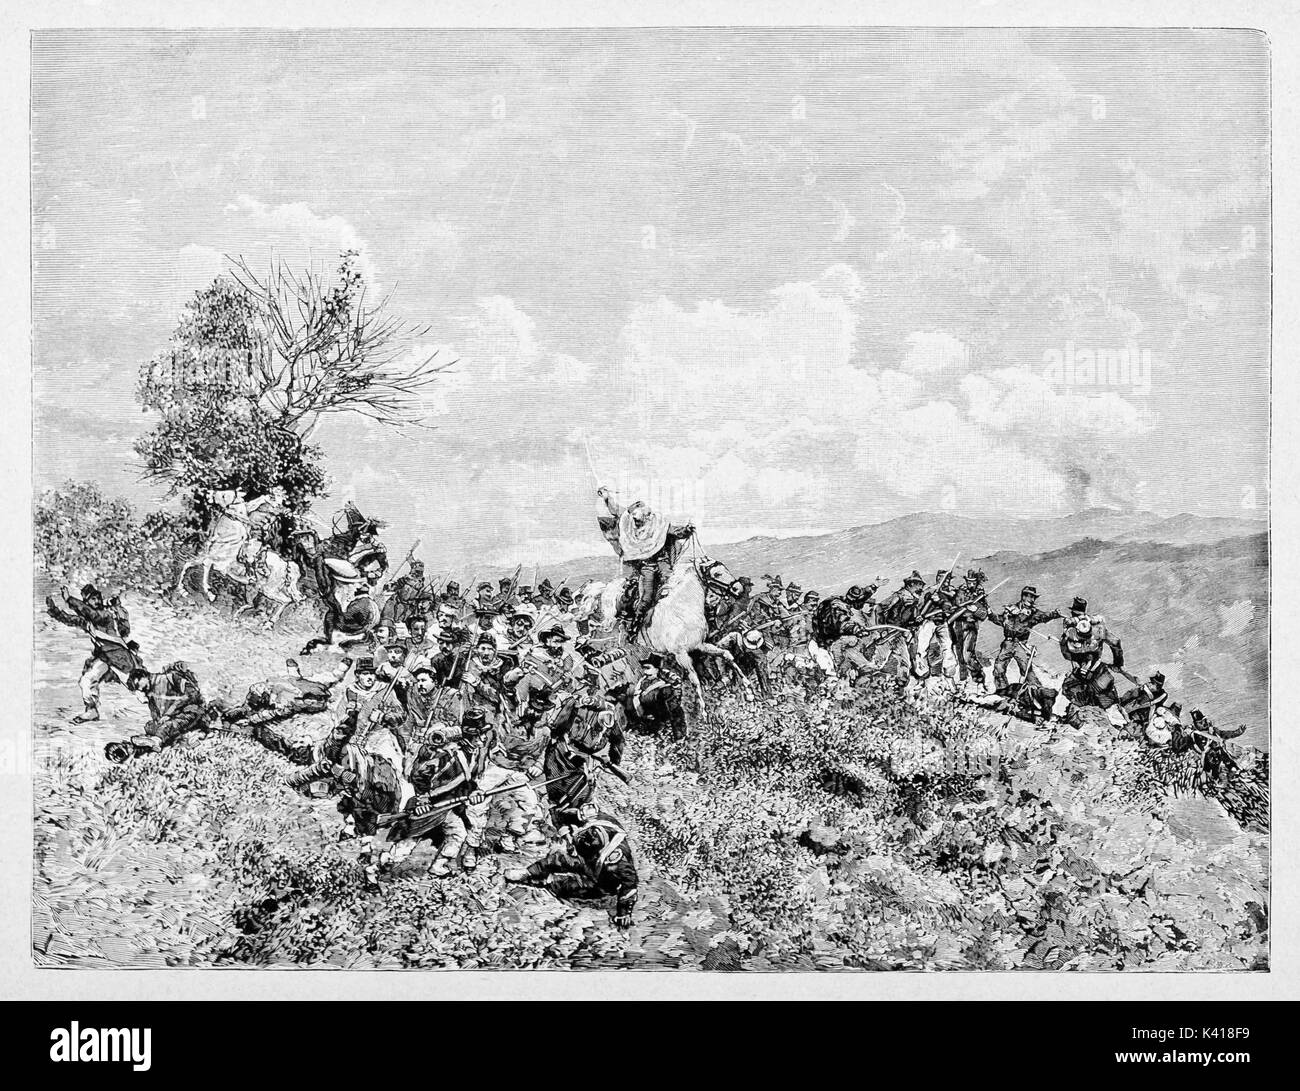 Mêlée au cours d'une bataille entre deux armées en face sur une colline. Le Général Garibaldi se tient sur son cheval se battre avec l'épée. La bataille de Milazzo. Par E. Matania sur Garibaldi e i suoi Tempi Milan, 1884 Banque D'Images